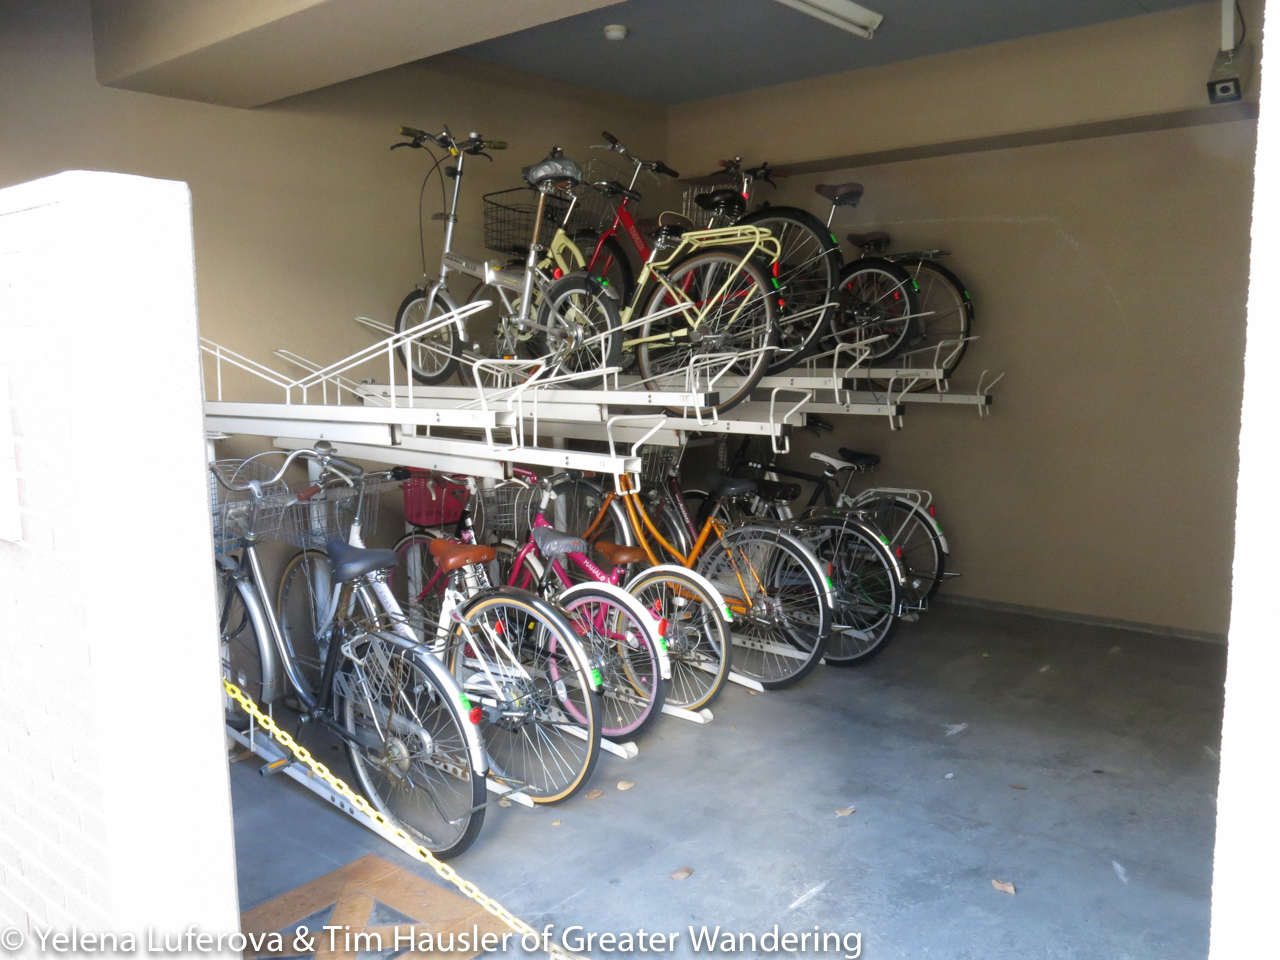 Bike storage - efficient